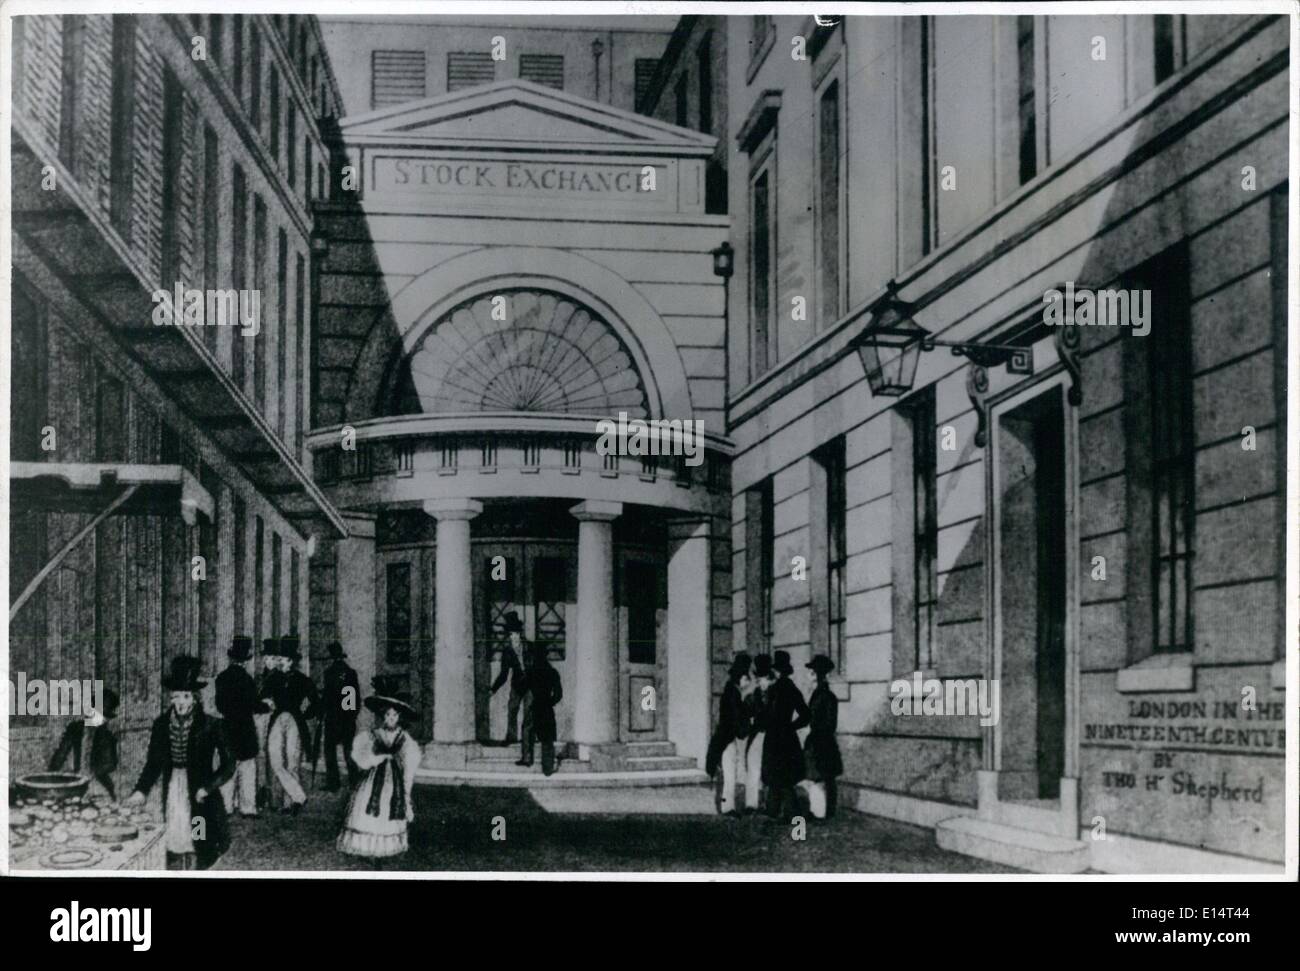 Avril 18, 2012 - L'Illustre Stock Exchange. OPS :- c'est la façon dont il a été en 1801, lorsqu'ils ont ouvert l'édifice que nous connaissons maintenant. Banque D'Images